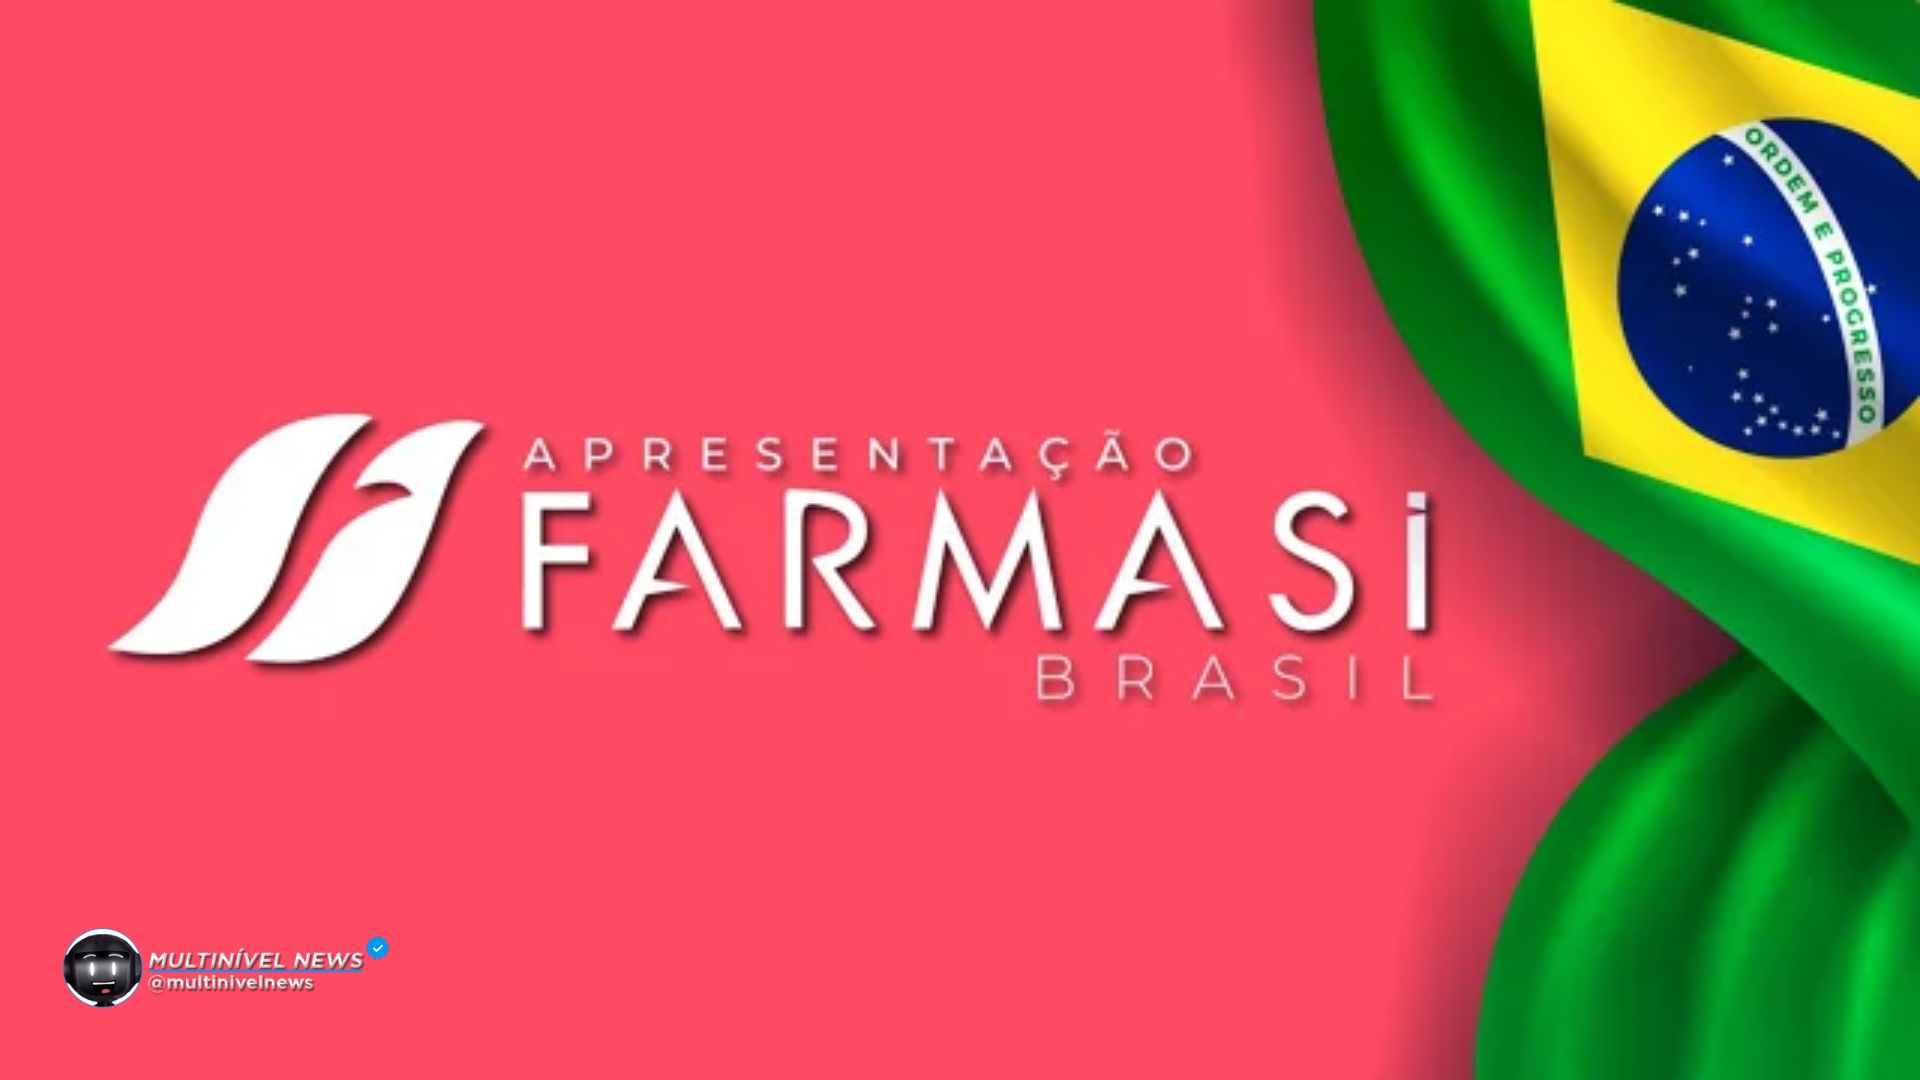 Evandro Viana Brilha na Farmasi com Novos Diretores e Grandes Expectativas para o Evento no Rio!